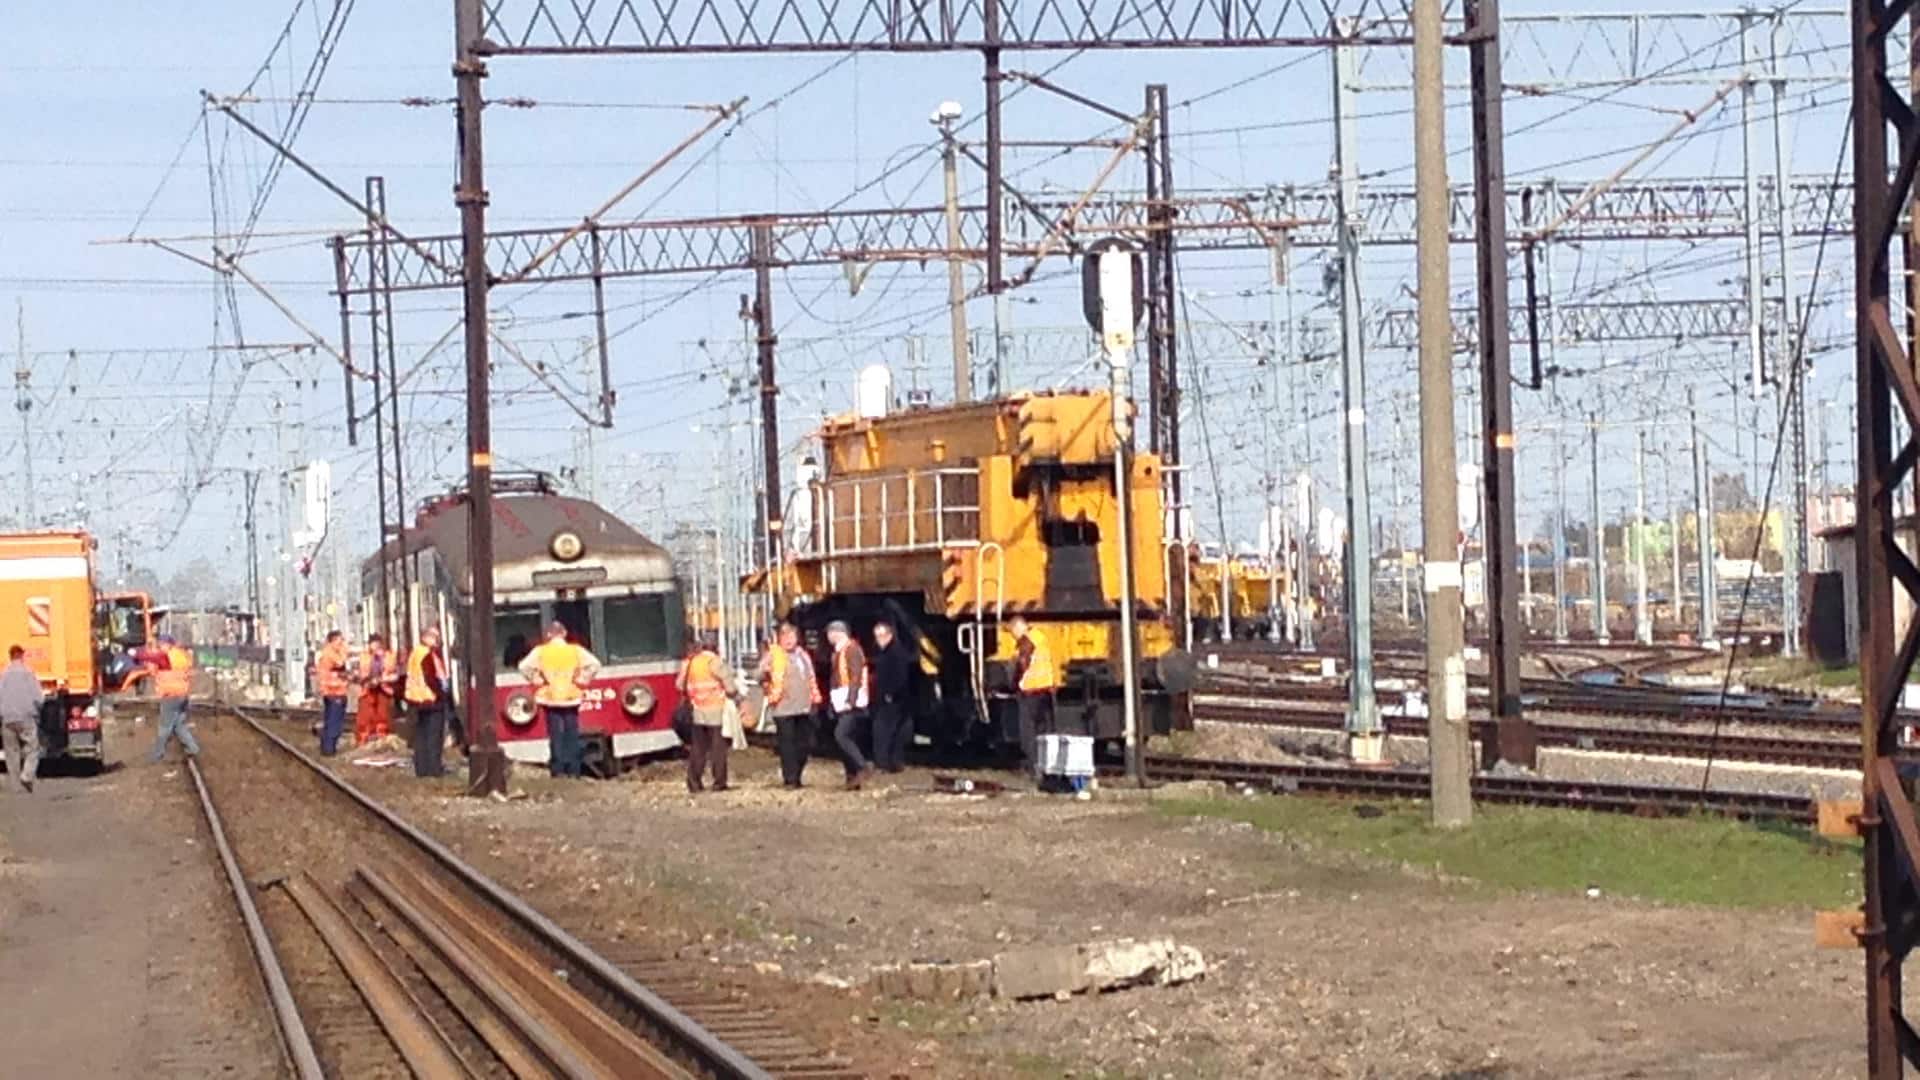 Pociąg wykoleił się w Iławie [FOTO] wypadek Wiadomości, Bartoszyce, Olsztyn, TOP, zemptypost, zPAP